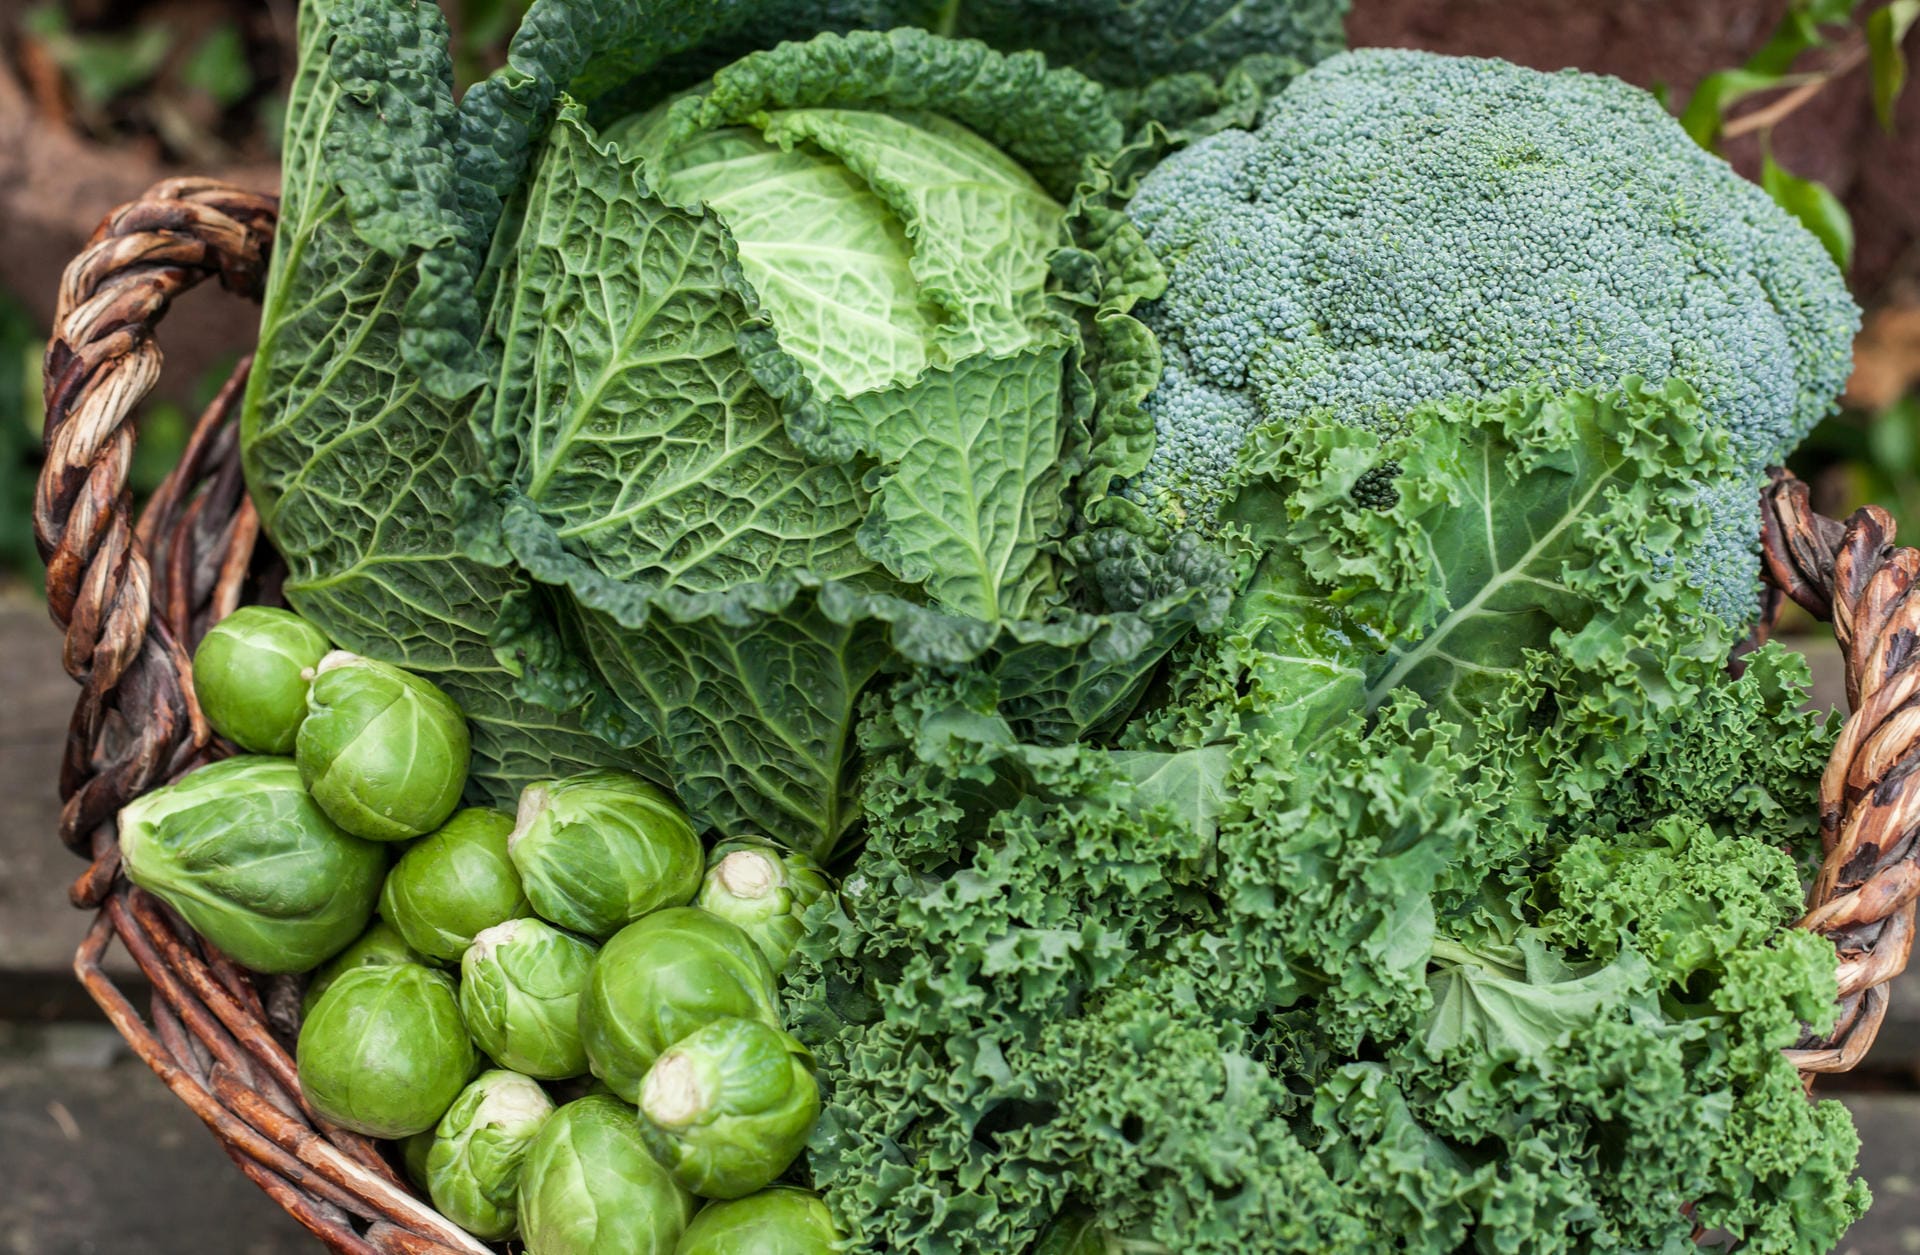 Dunkelgrüne Gemüsesorten sind nicht nur reich an Kalzium, sondern liefern auch viel Vitamin K. Das Vitamin unterstützt die Kalziumeinlagerung in die Knochen. Als bestes Knochengemüse gilt der Grünkohl mit mehr als 200 mg Kalzium pro 100 Gramm.